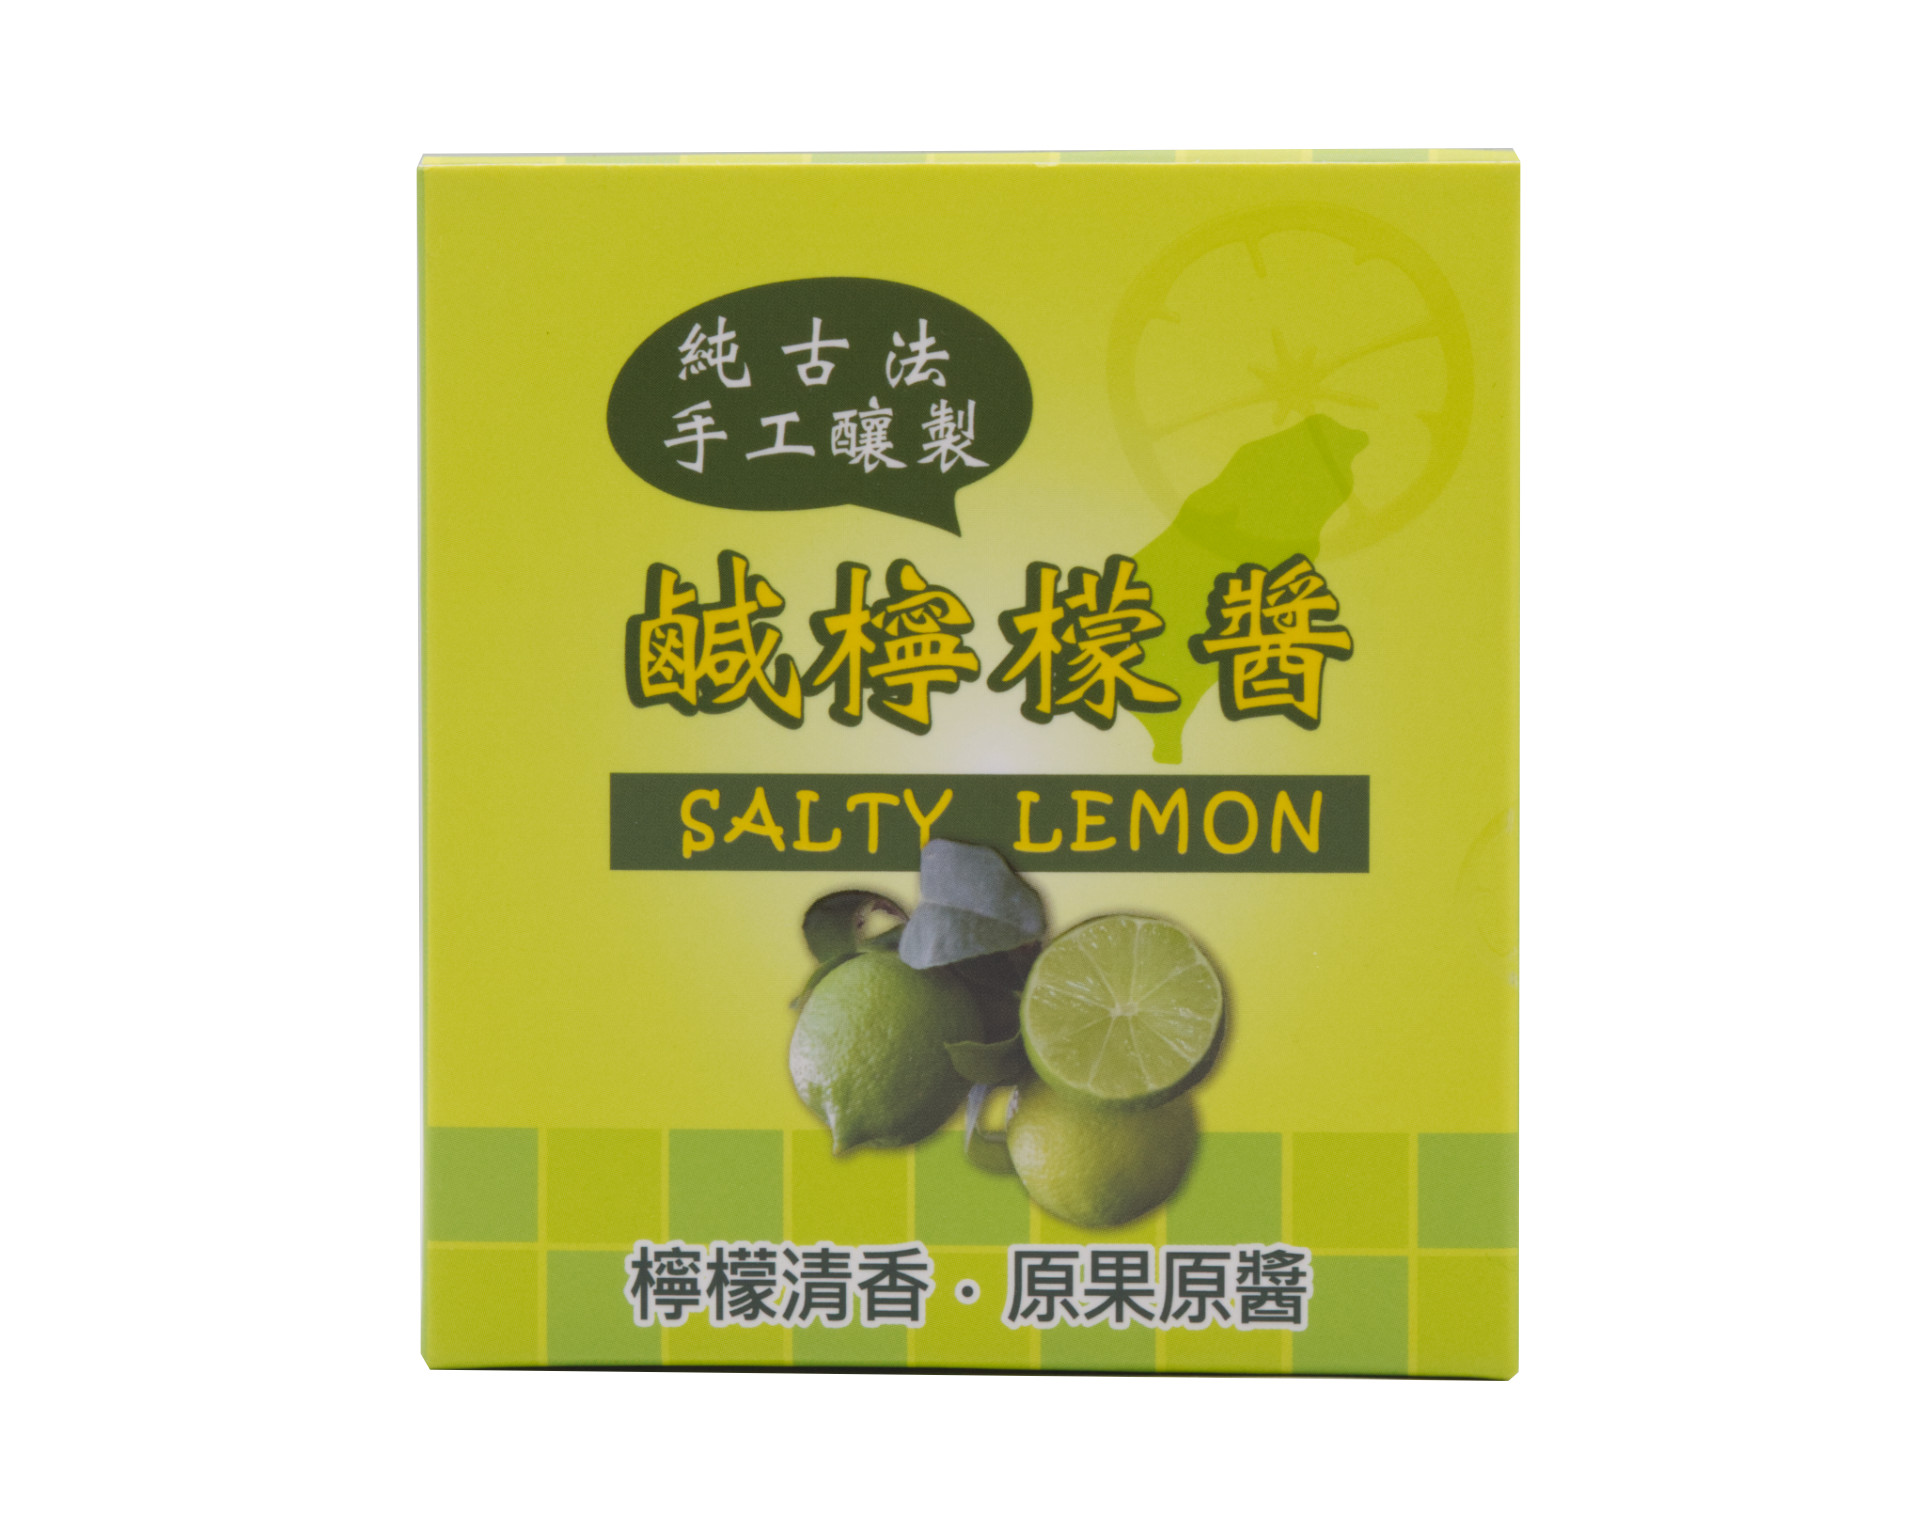 海錦富鹼檸檬醬 Salty Lemon